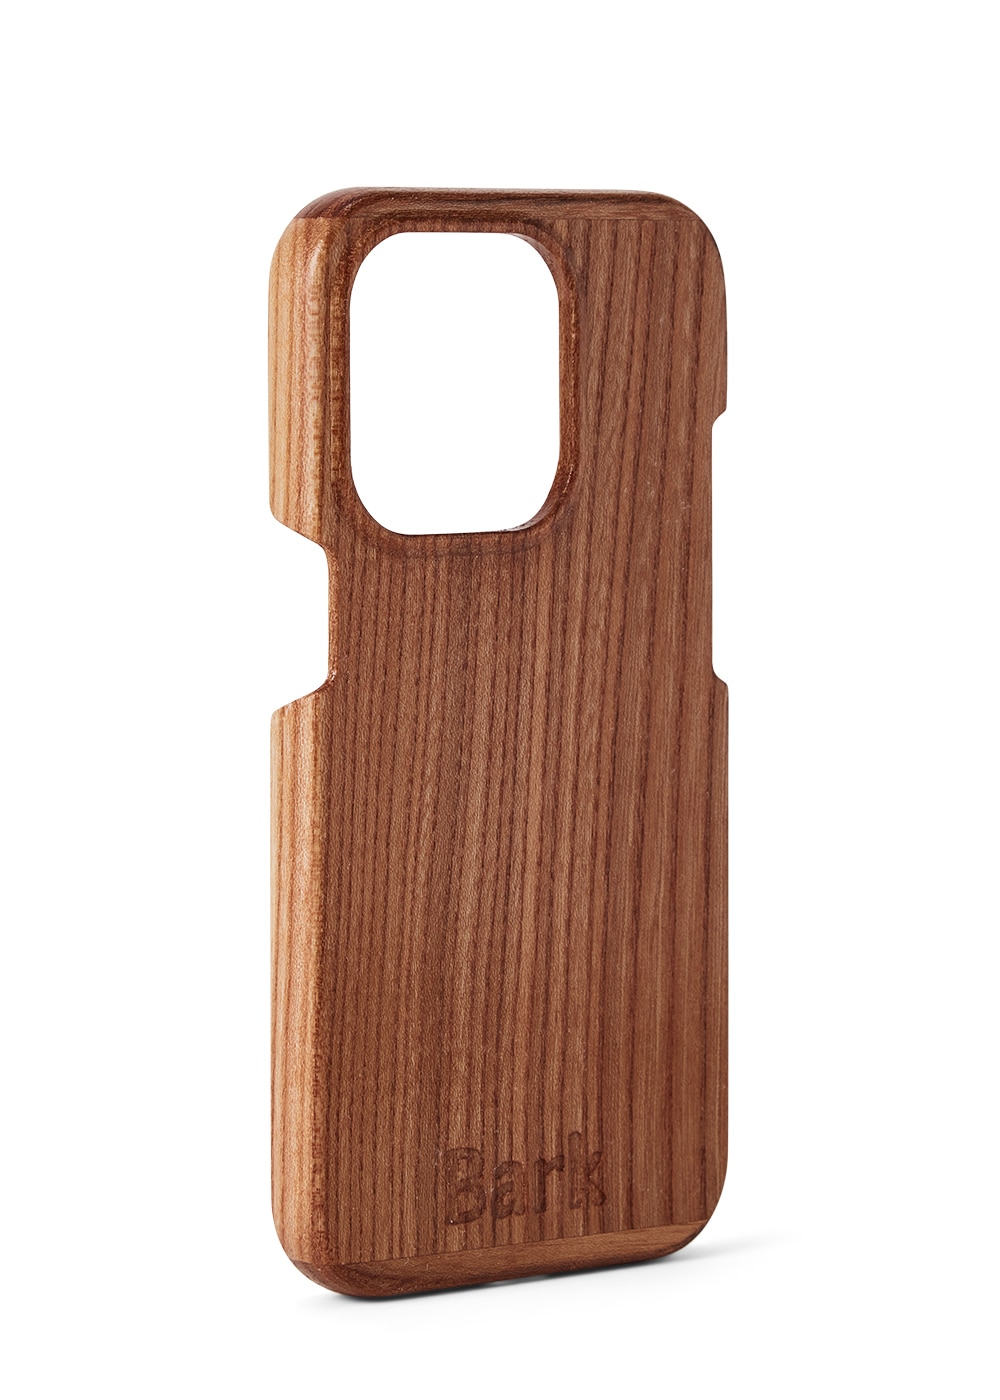 iPhone 14 Pro case made of Swedish hardwood - Alm